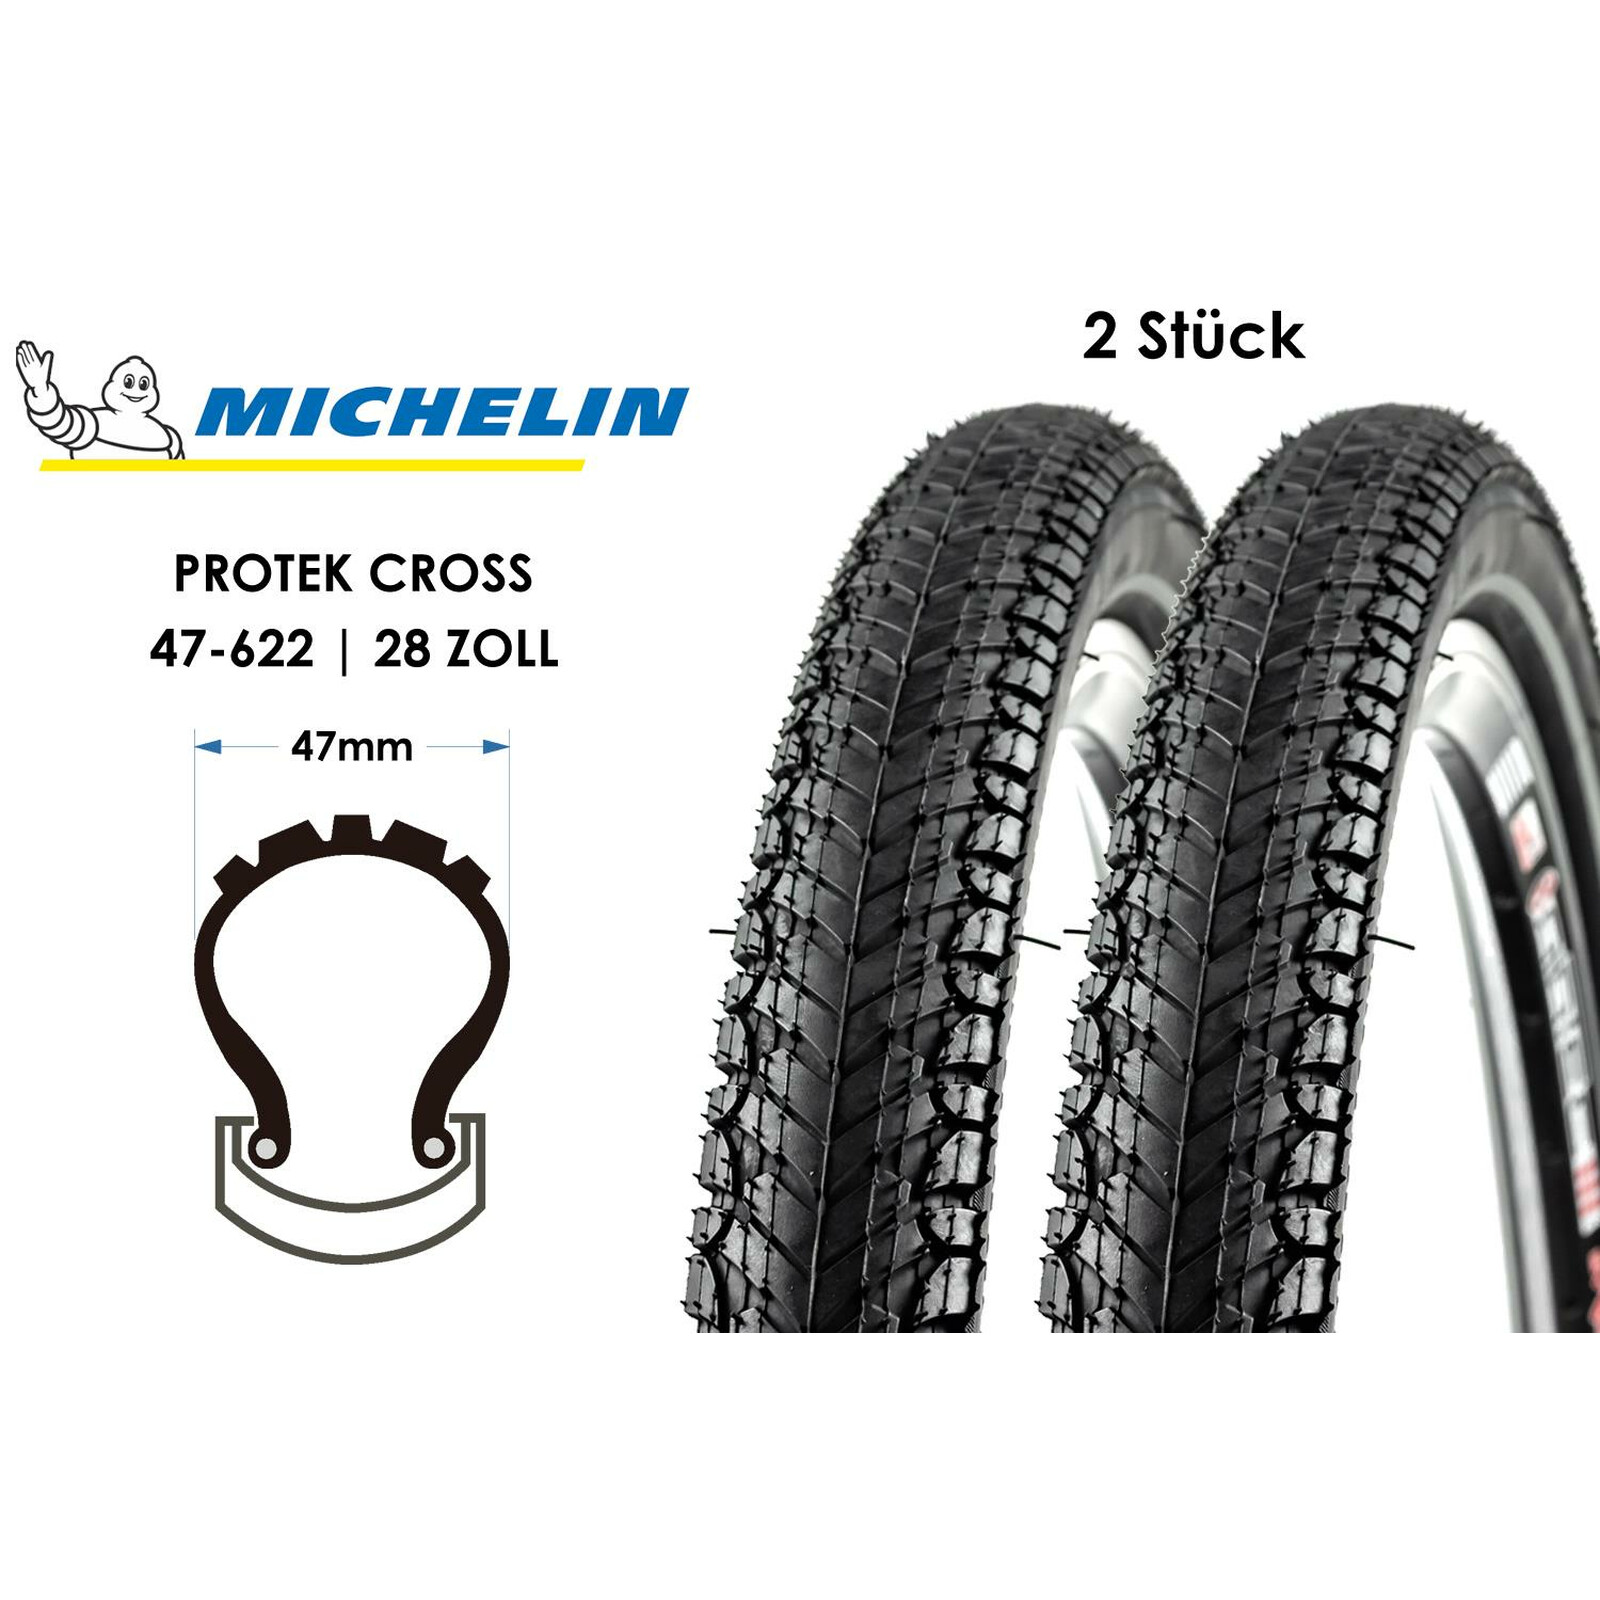 28 Zoll MICHELIN Protek Cross 28x1.75 Fahrrad Reifen 47-622 Reflex Mantel 